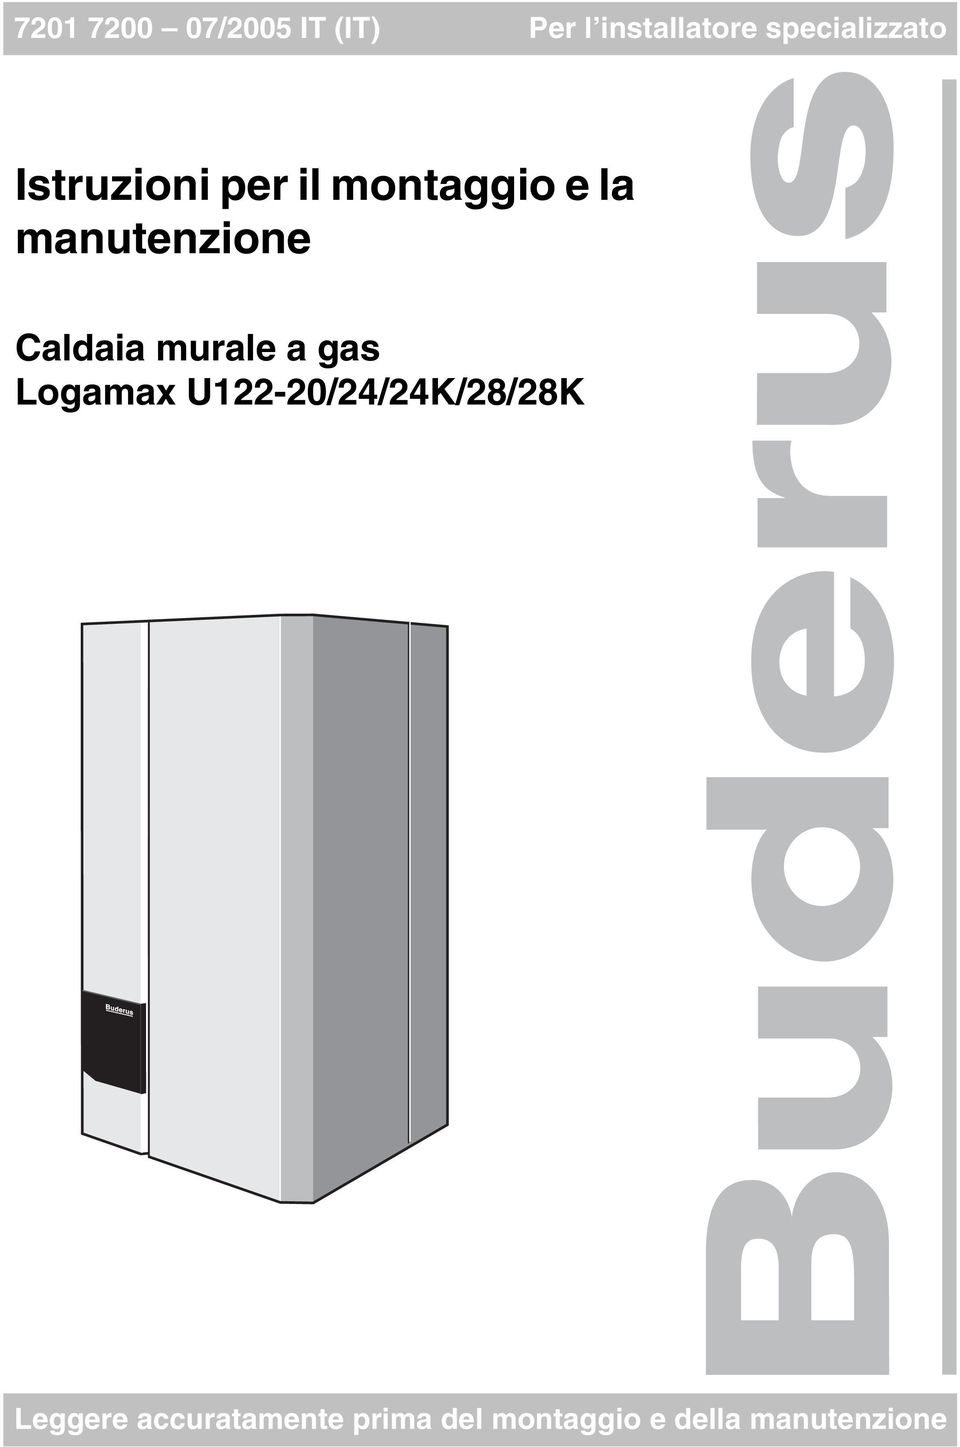 manutenzione Caldaia murale a gas Logamax